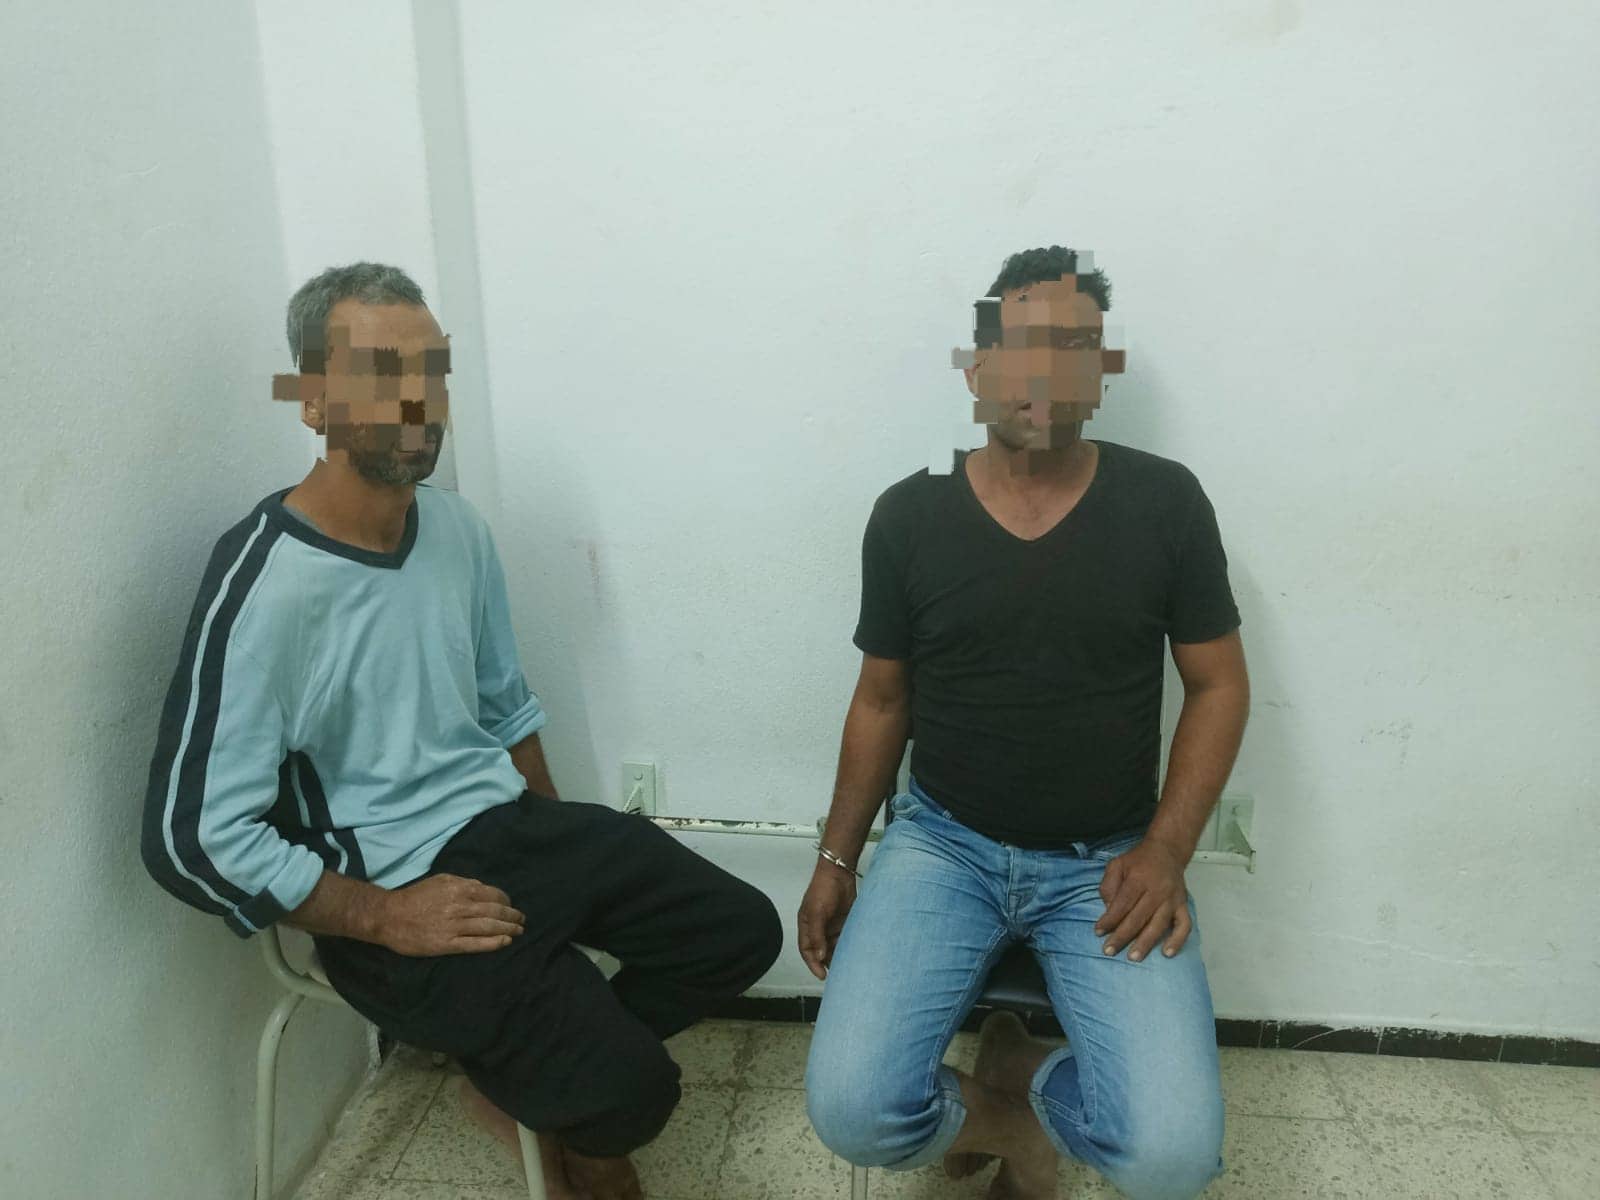 جبنيانة: القبض على عنصرين خطيرين بتهمة تكوين وفاق يهدف لاجتياز الحدود البحرية خلسة